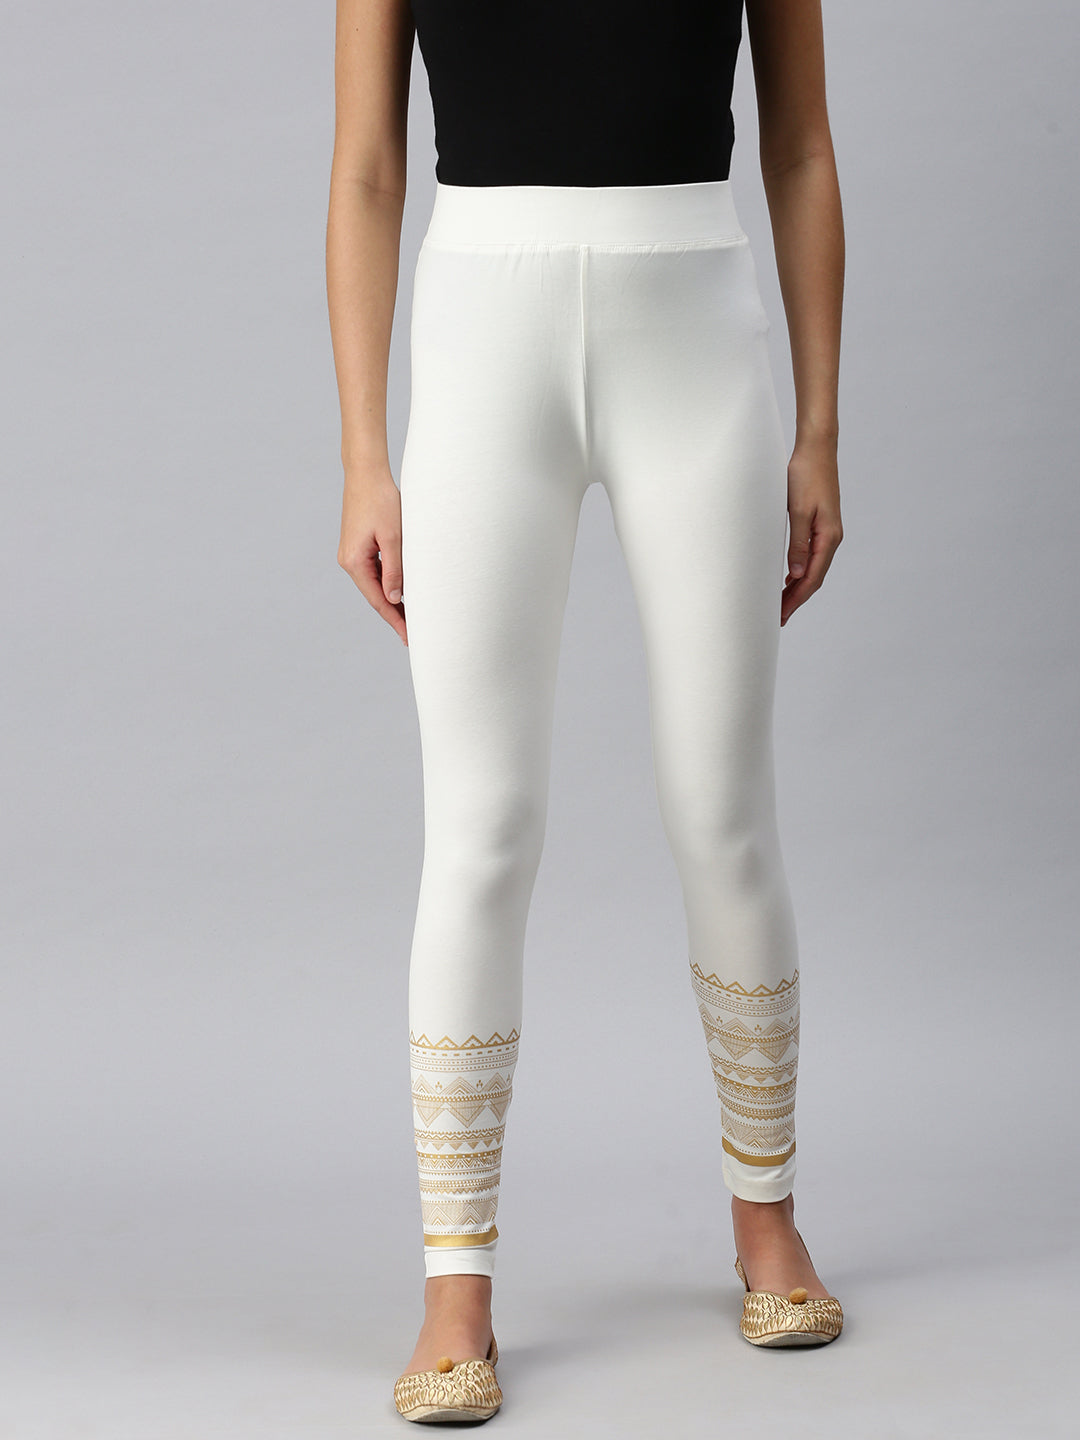 Off White Virgil Abloh Athletic seamless logo leggings brand new Women size  S/M | eBay